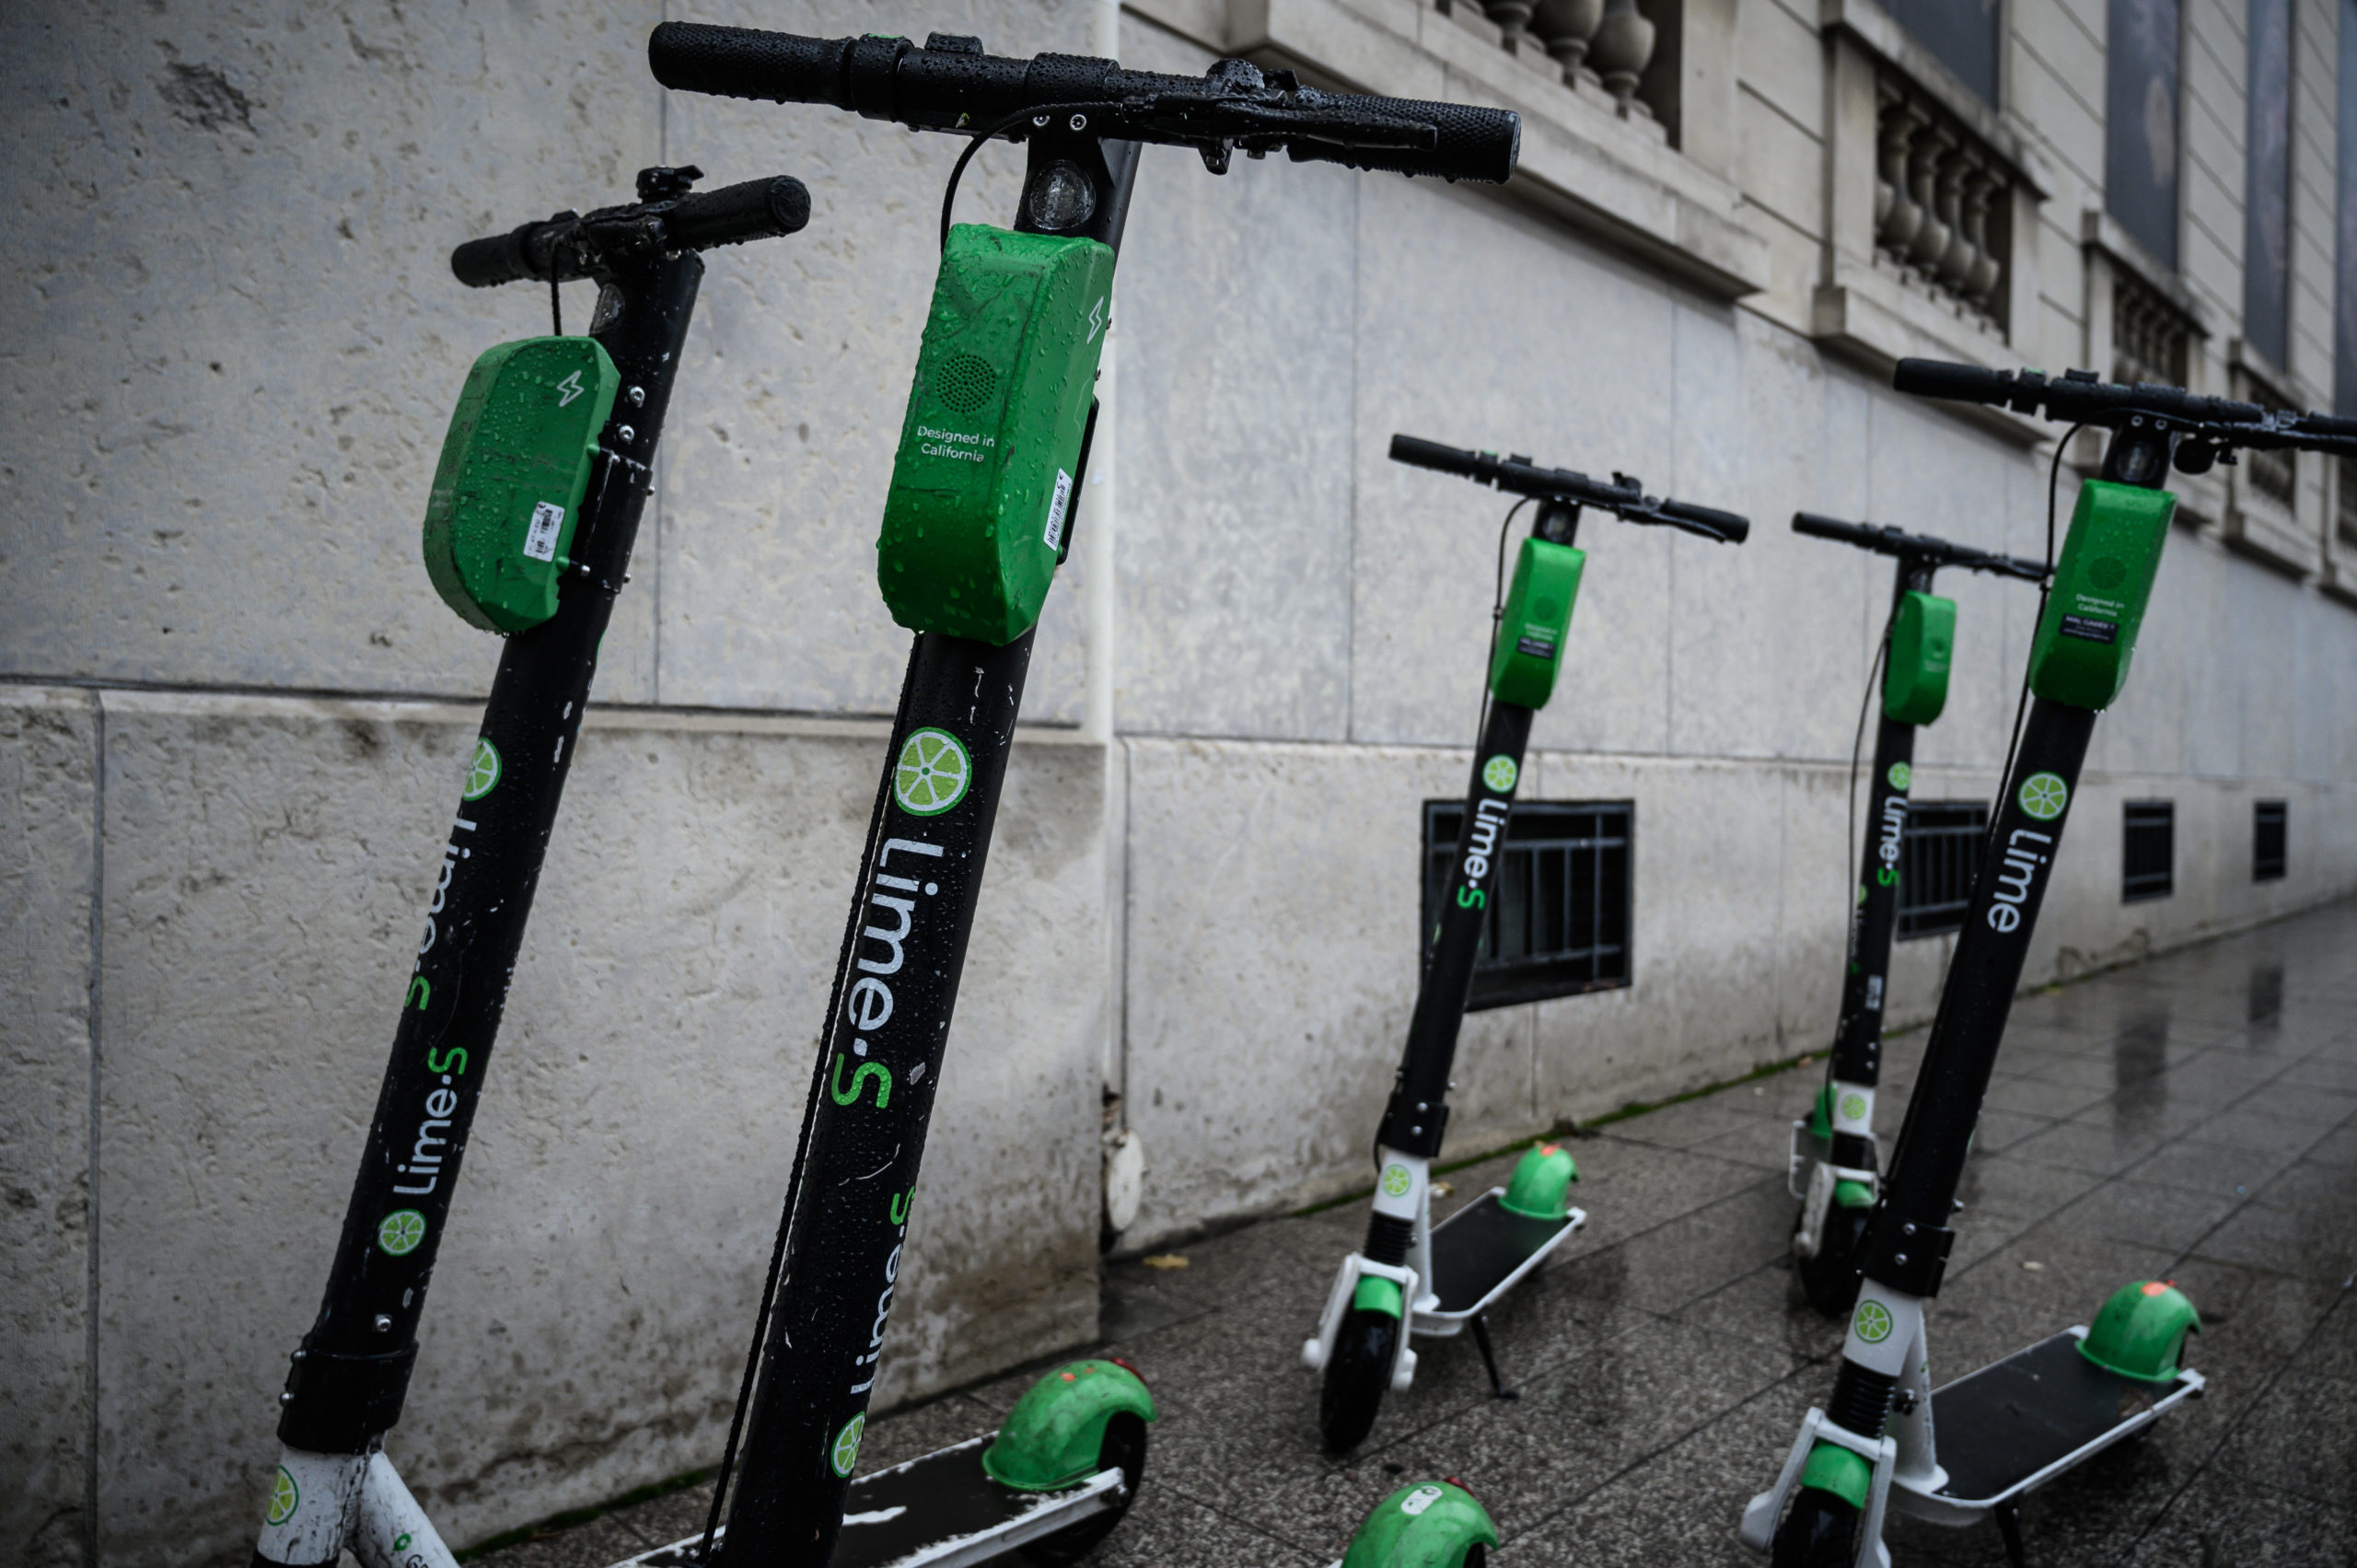 Corona: Lime pulls back e-scooters